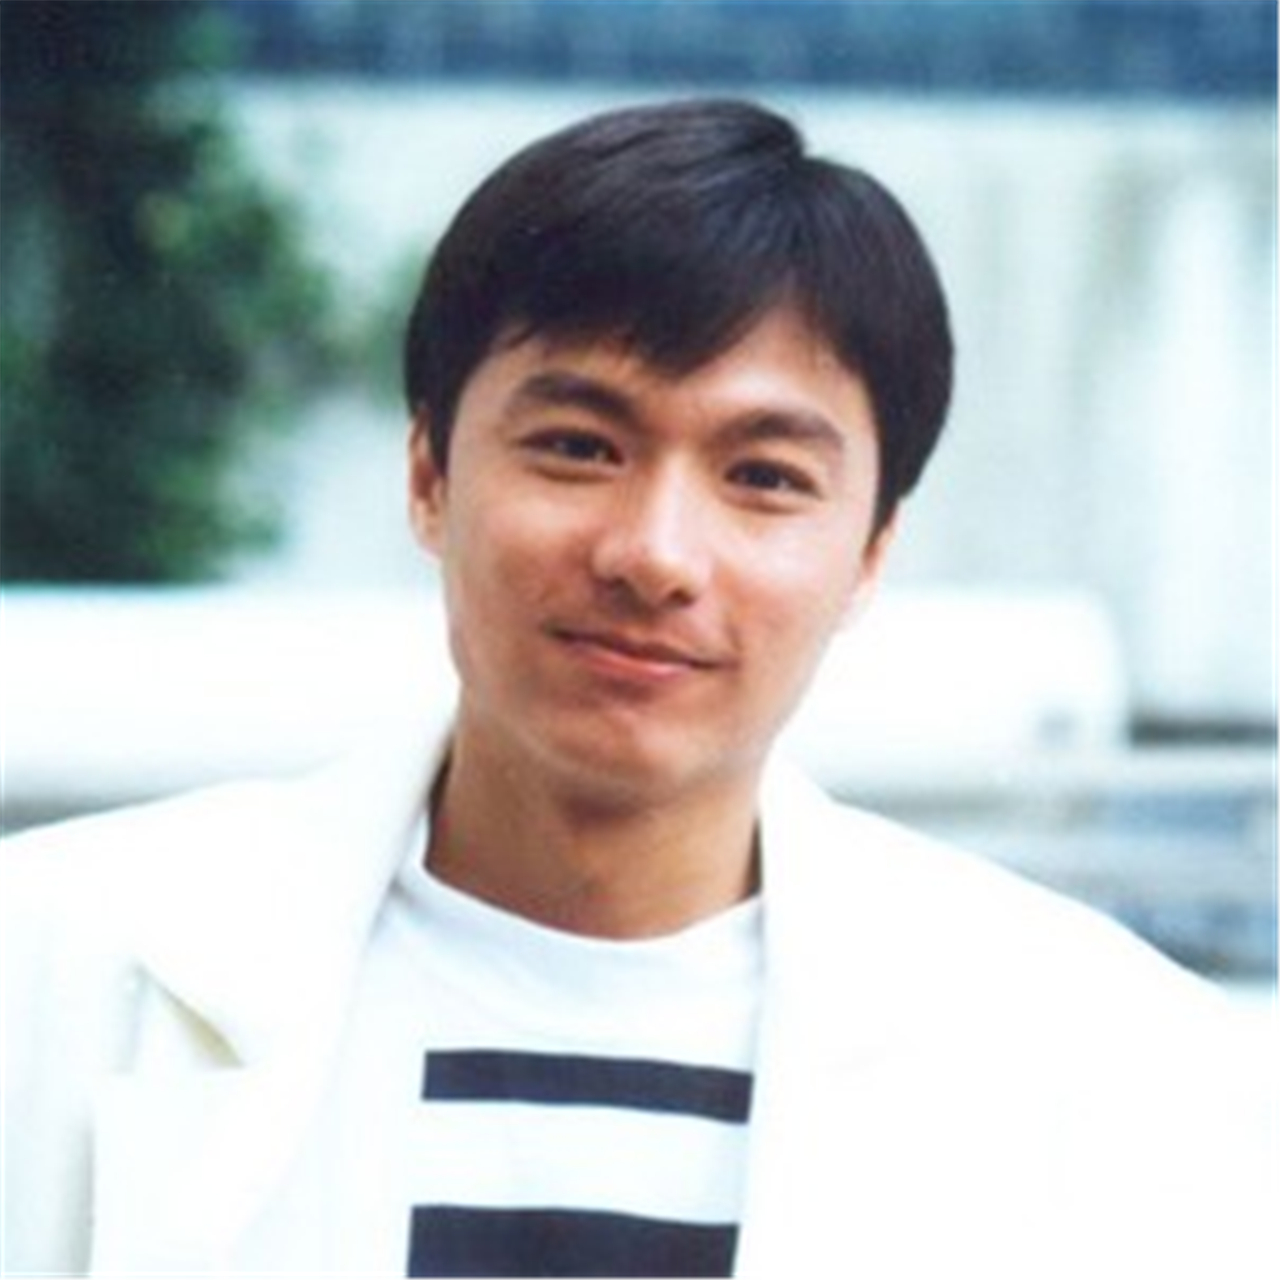 当年曾经让周星驰演自己配角的男人,林俊贤